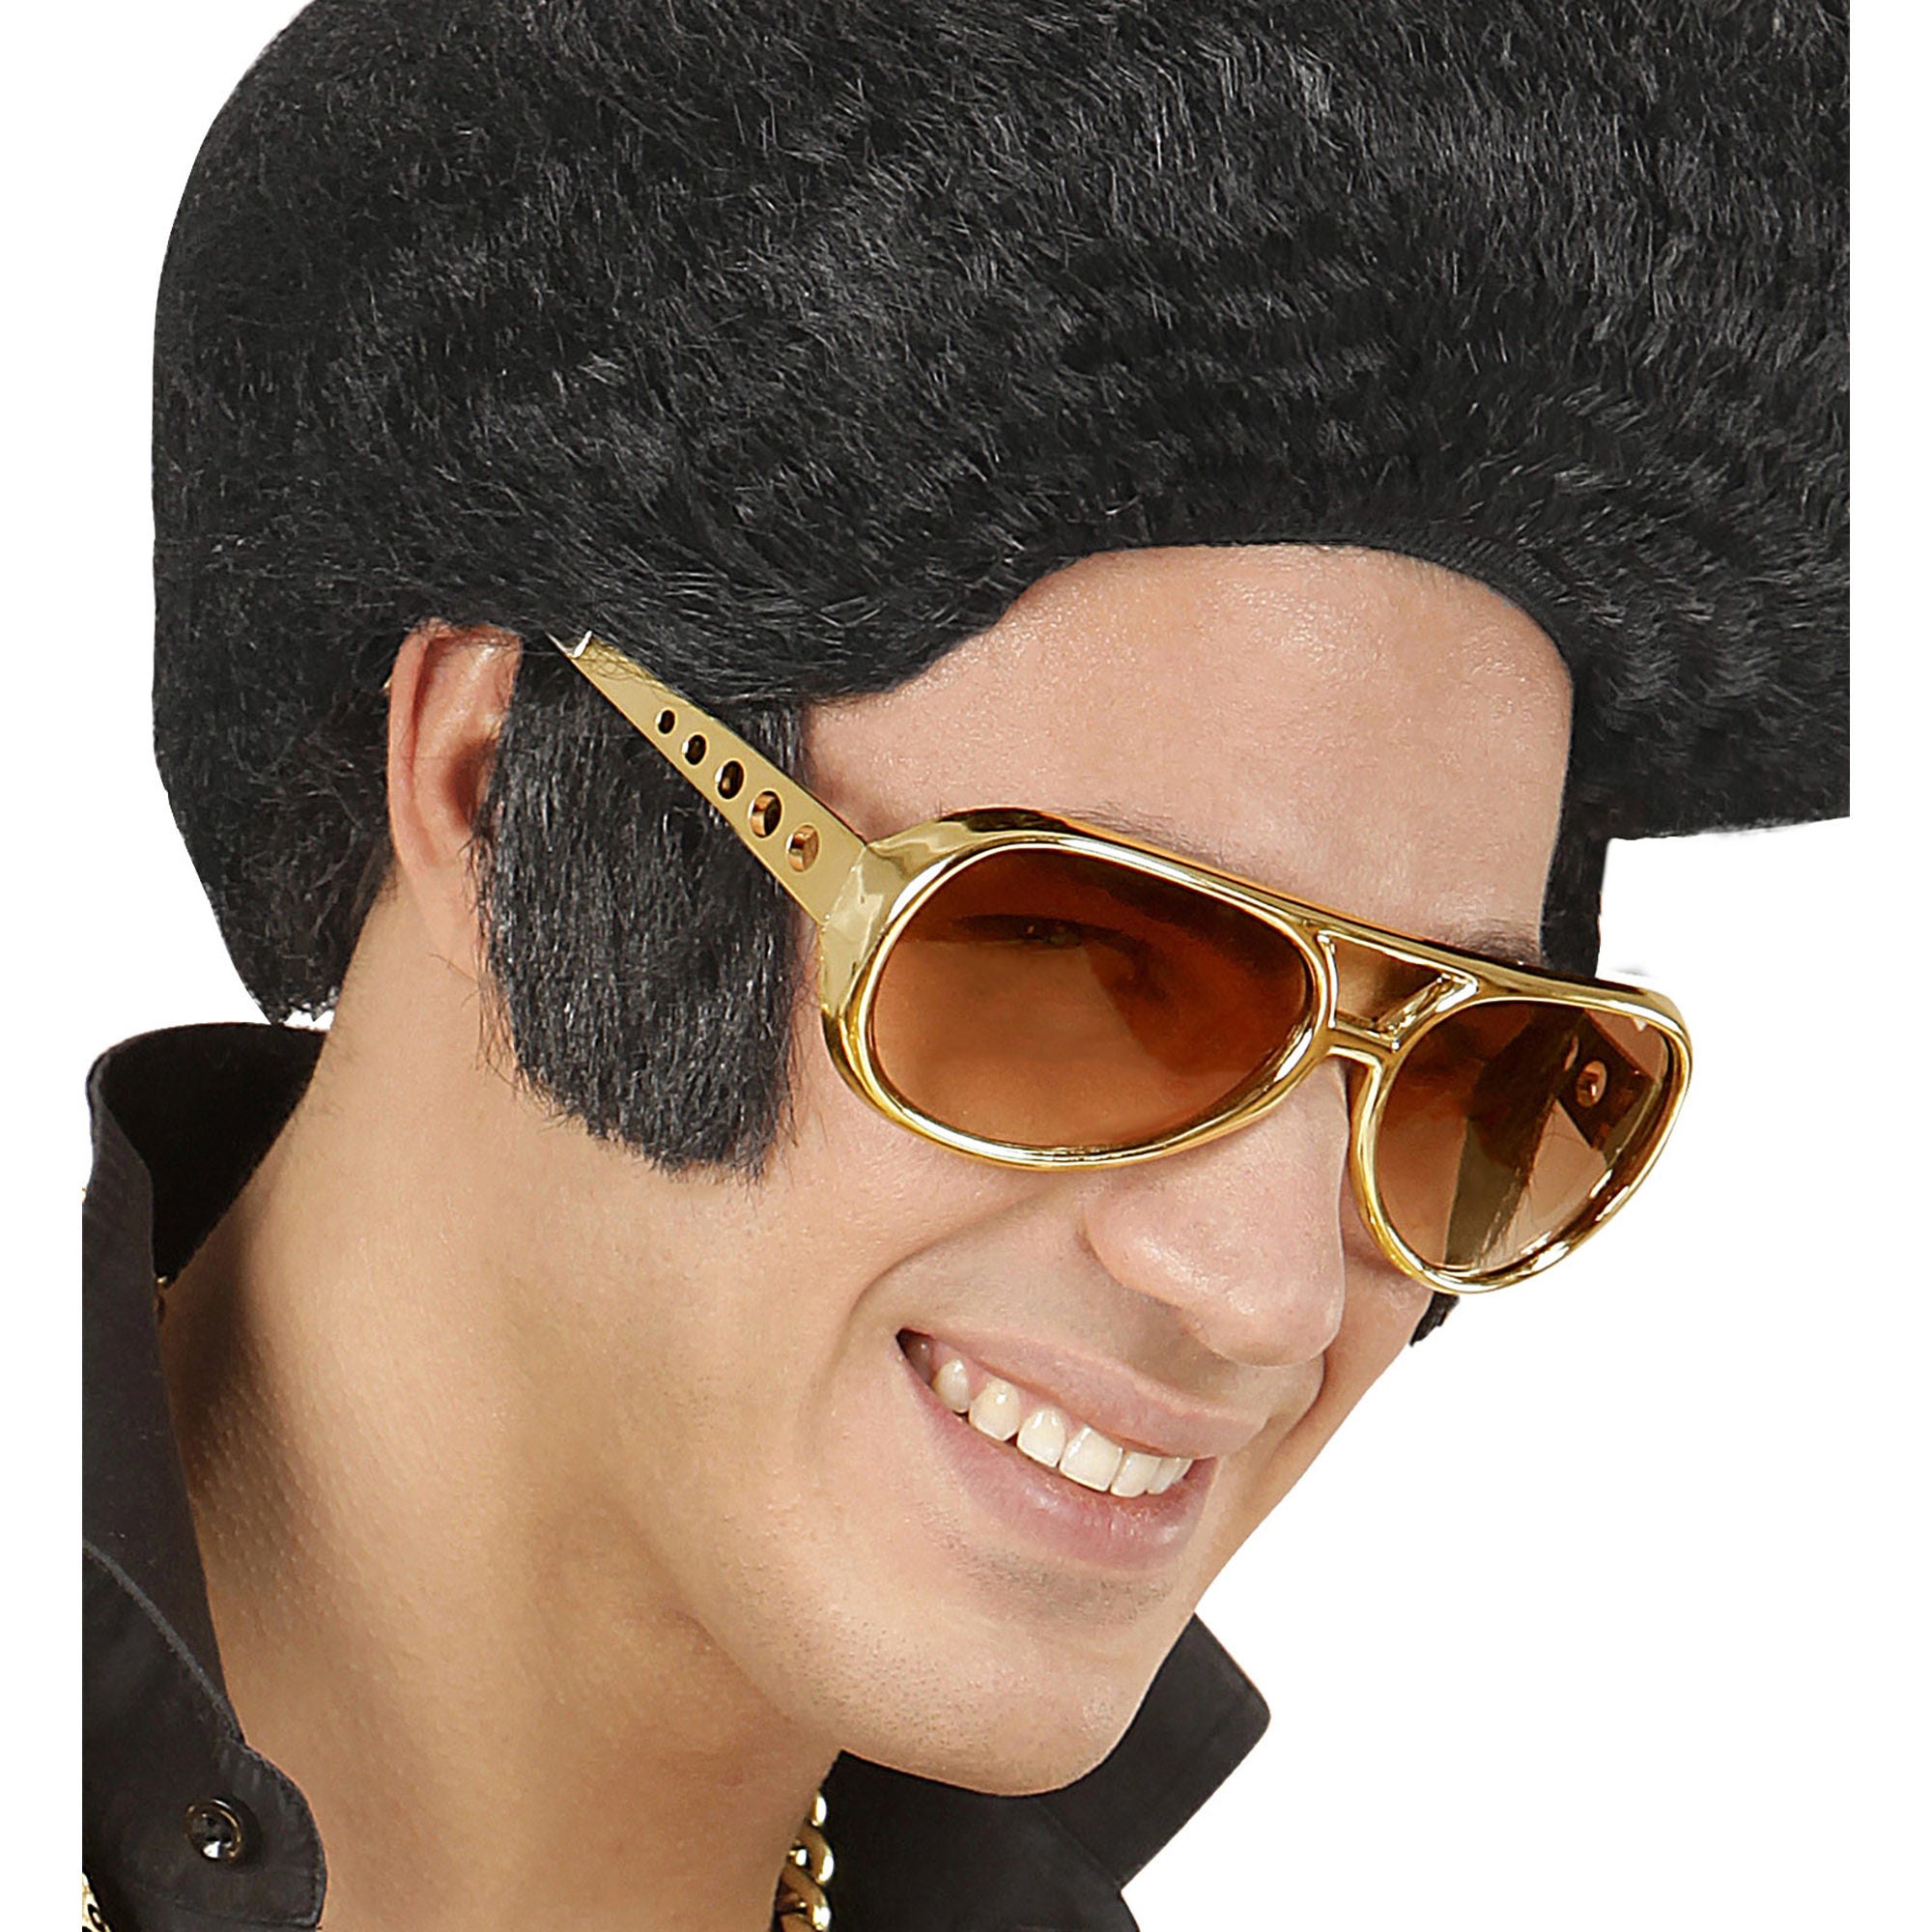 WIDMANN - Goudkleurige Elvis-bril - Accessoires > Brillen